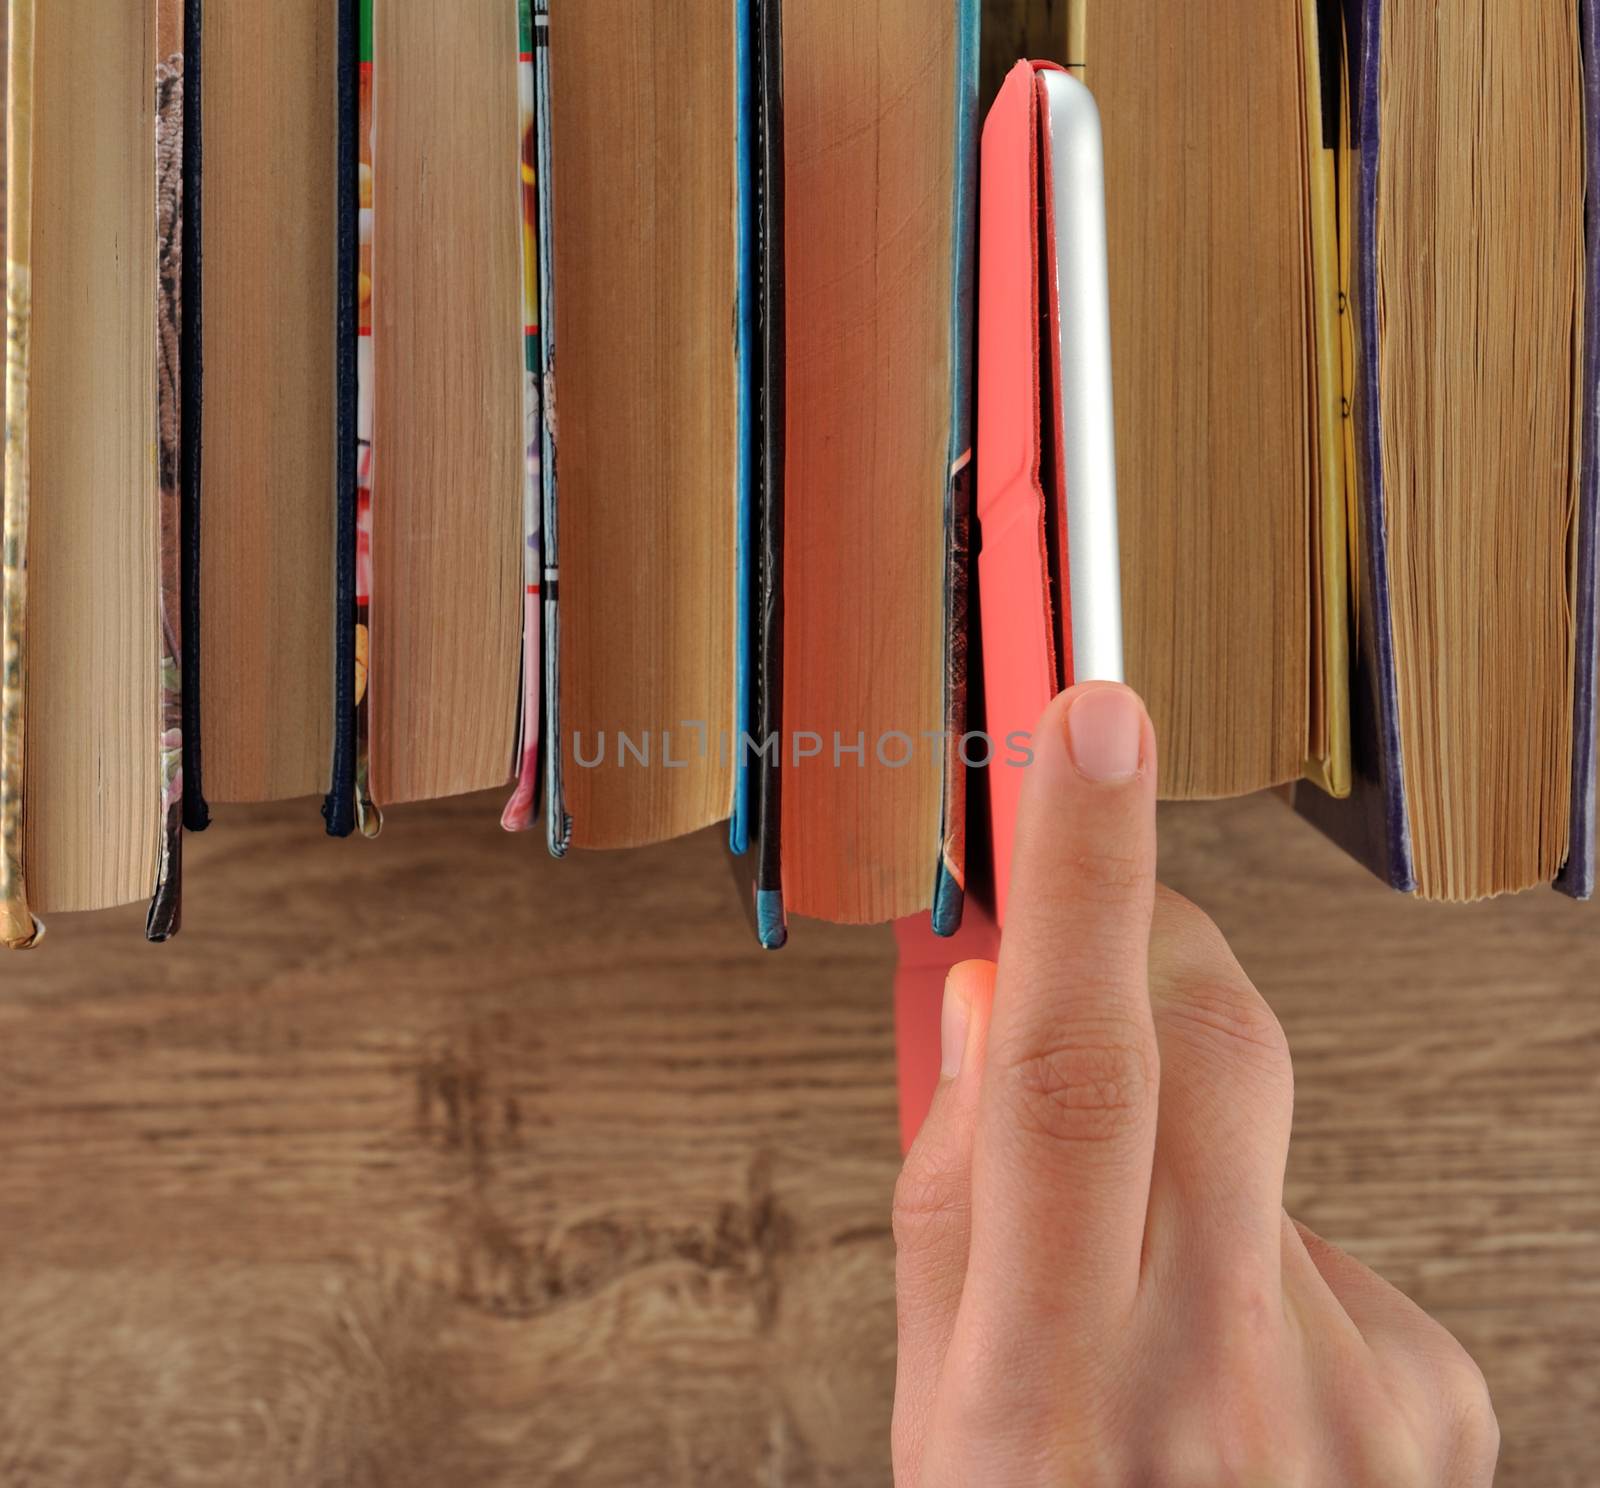 Hand taking tablet from bookshelf